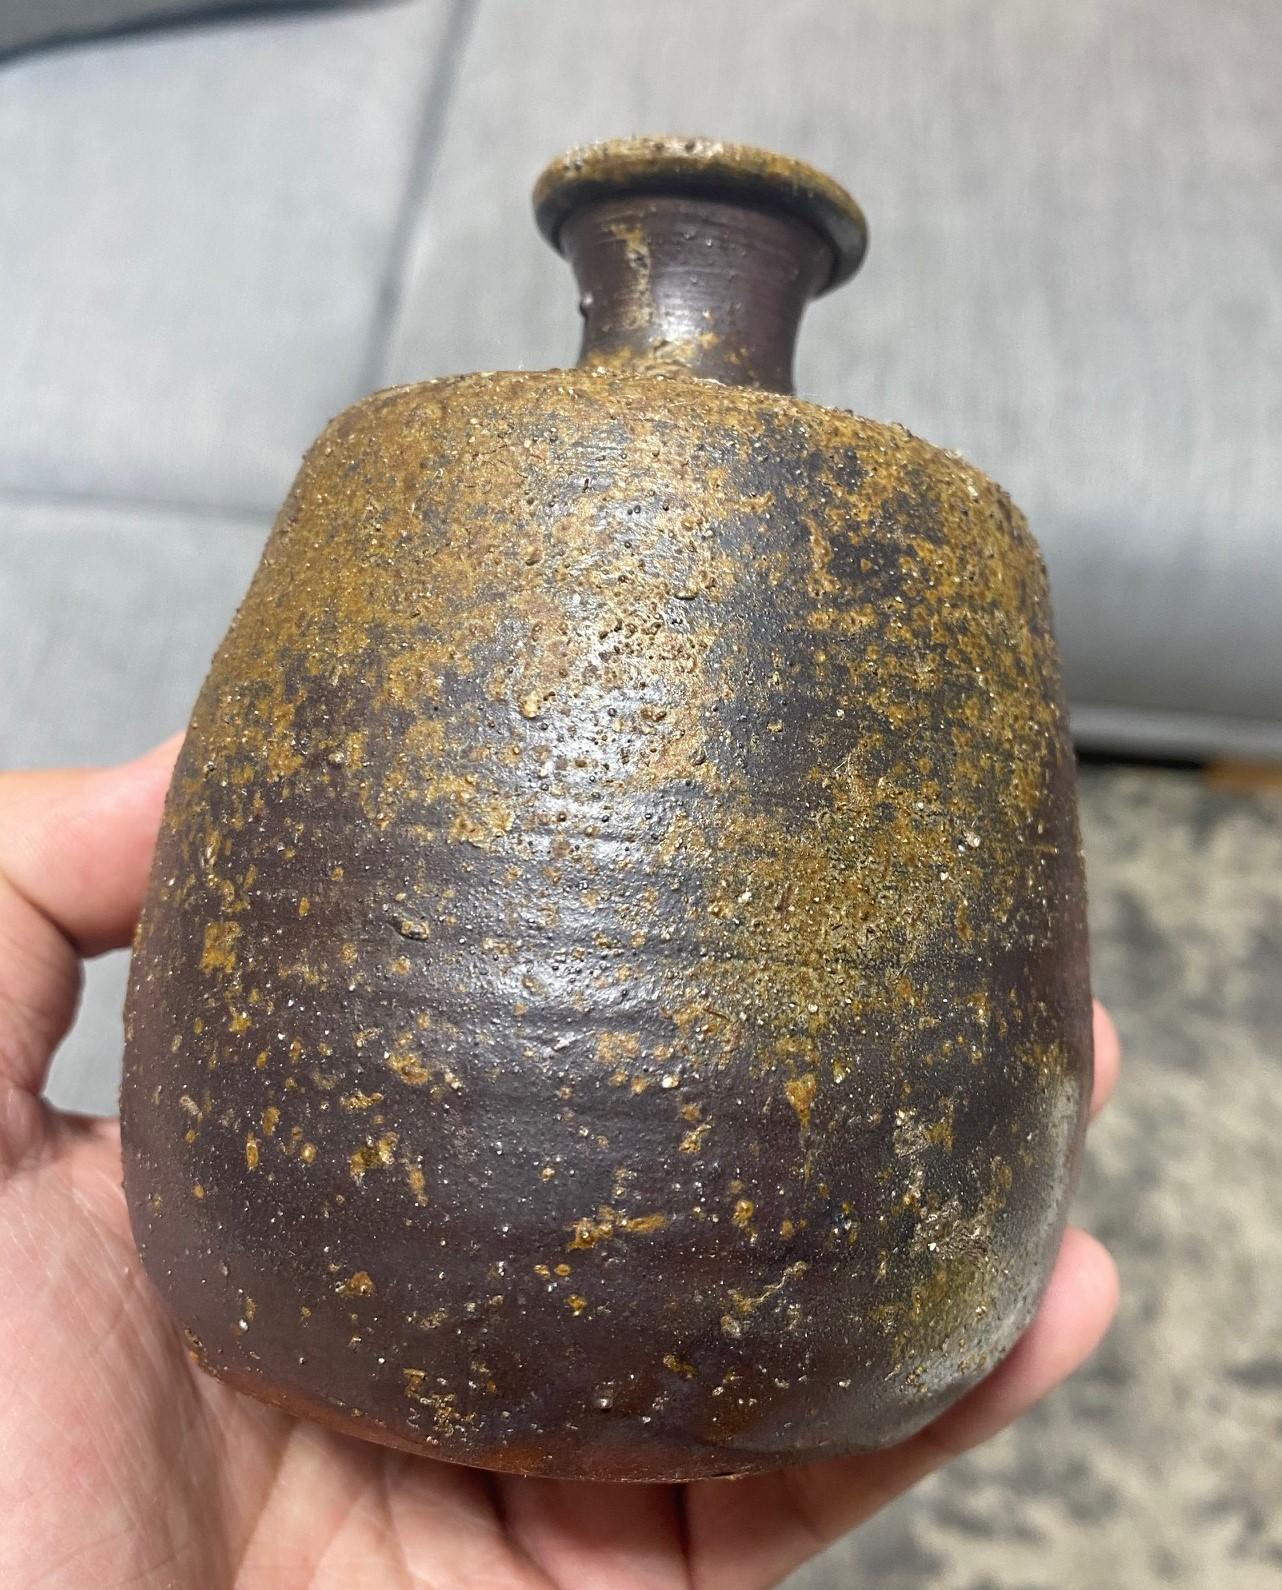 Kaneshige Toyo National Treasure Signed Japanese Bizen Pottery Sake Bottle Vase For Sale 3